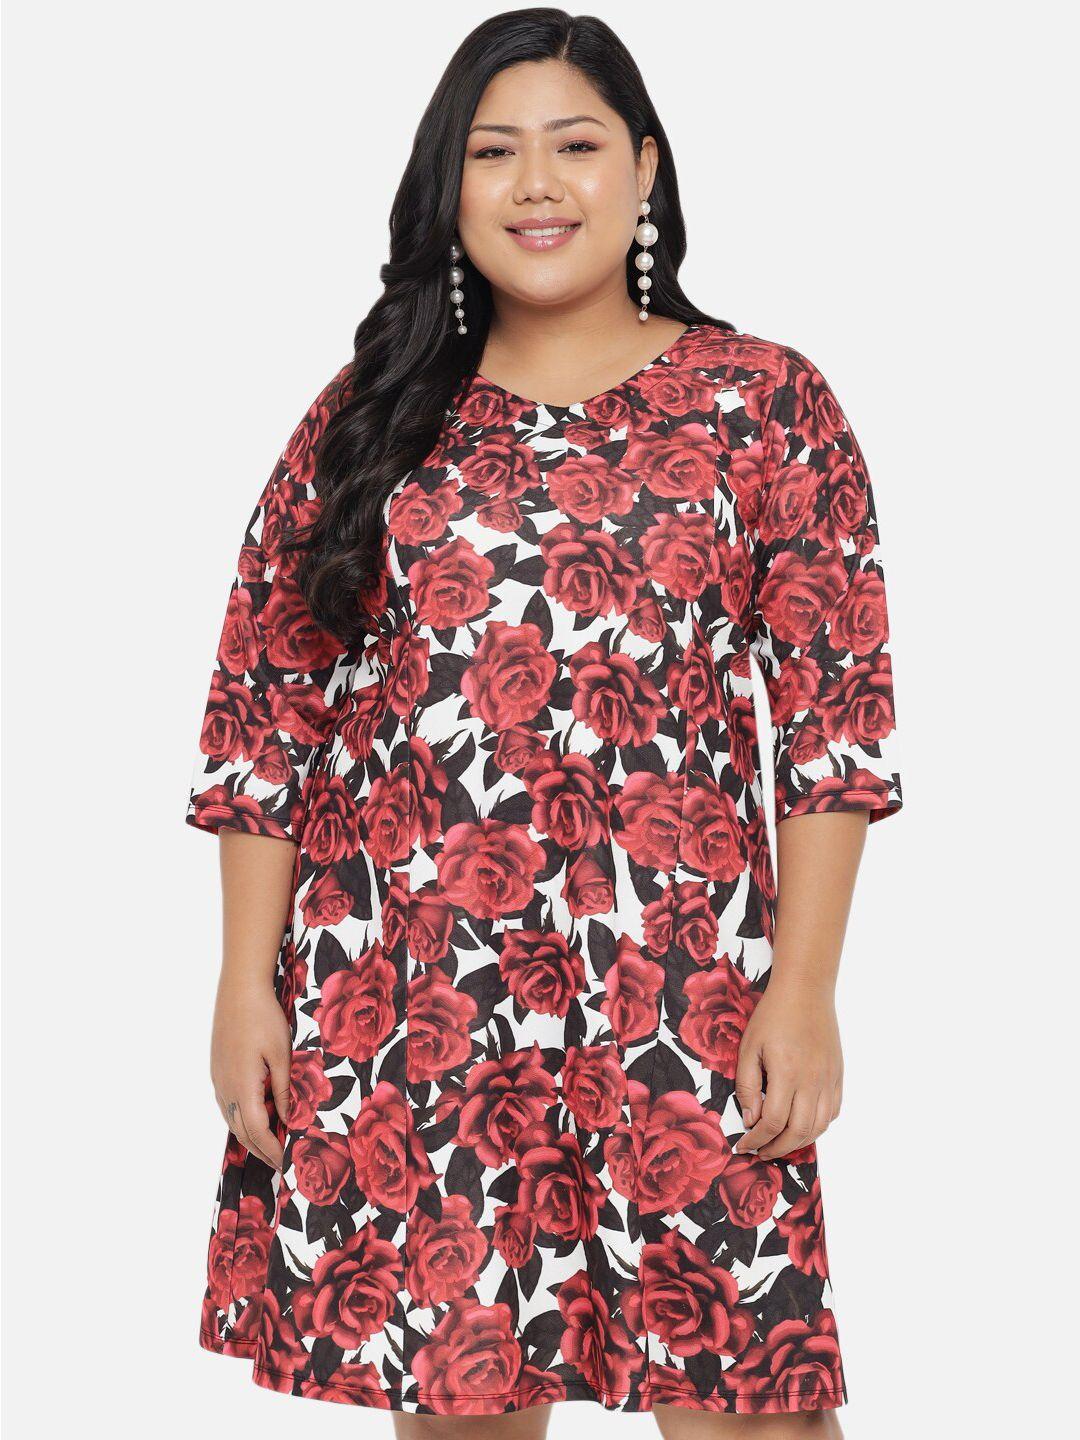 amydus women plus size red floral a-line dress